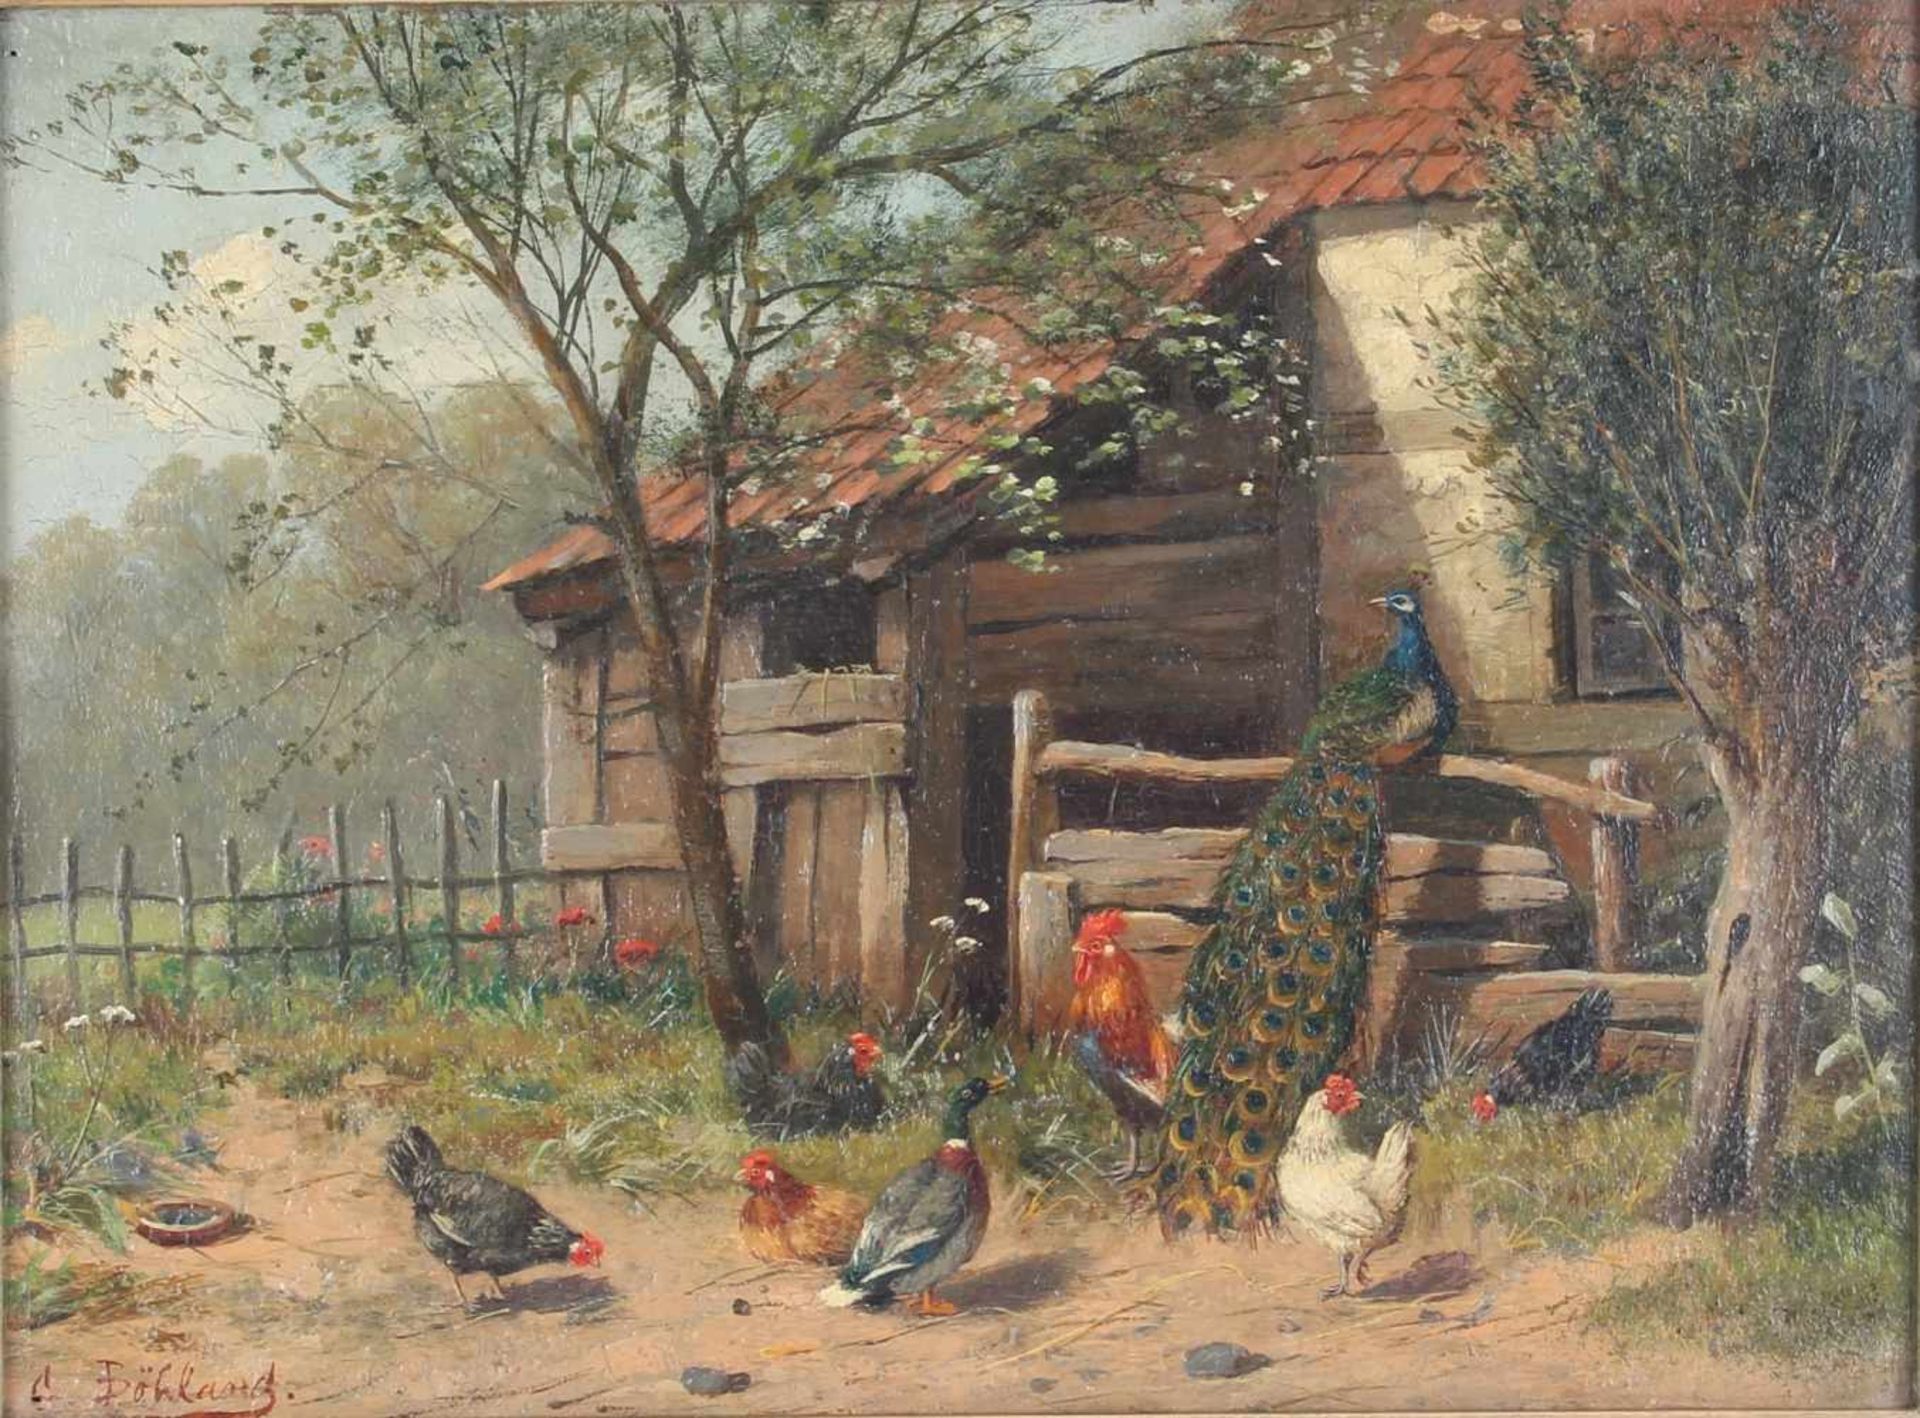 Federvieh, Hahn mit Hühnern, Ente und Pfau am Bauernhaus - signiert, rooster with chickens, duck